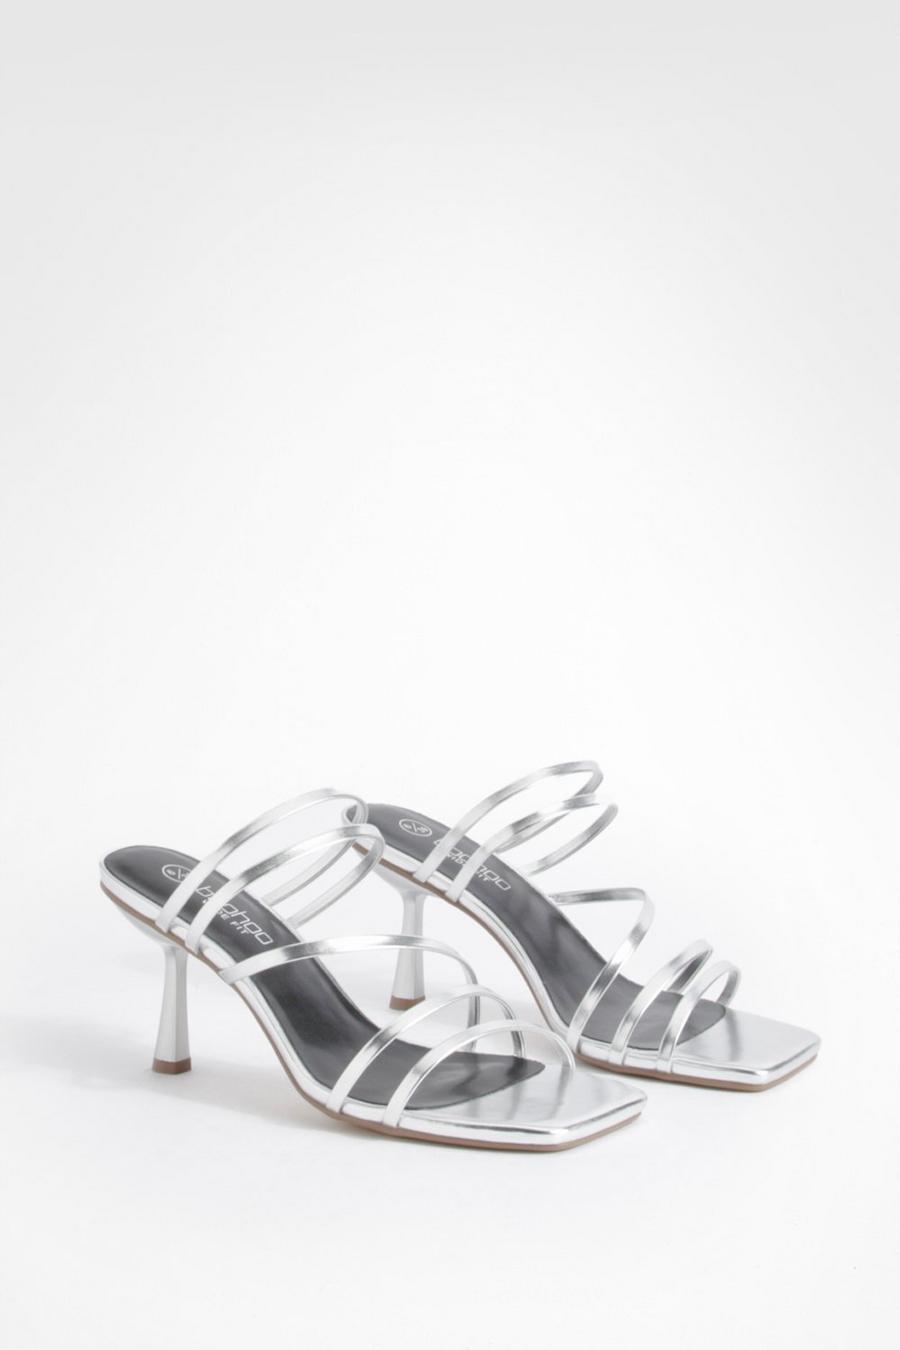 Sandali Mules a calzata ampia metallizzati con laccetti bassi e tacco a spillo, Silver